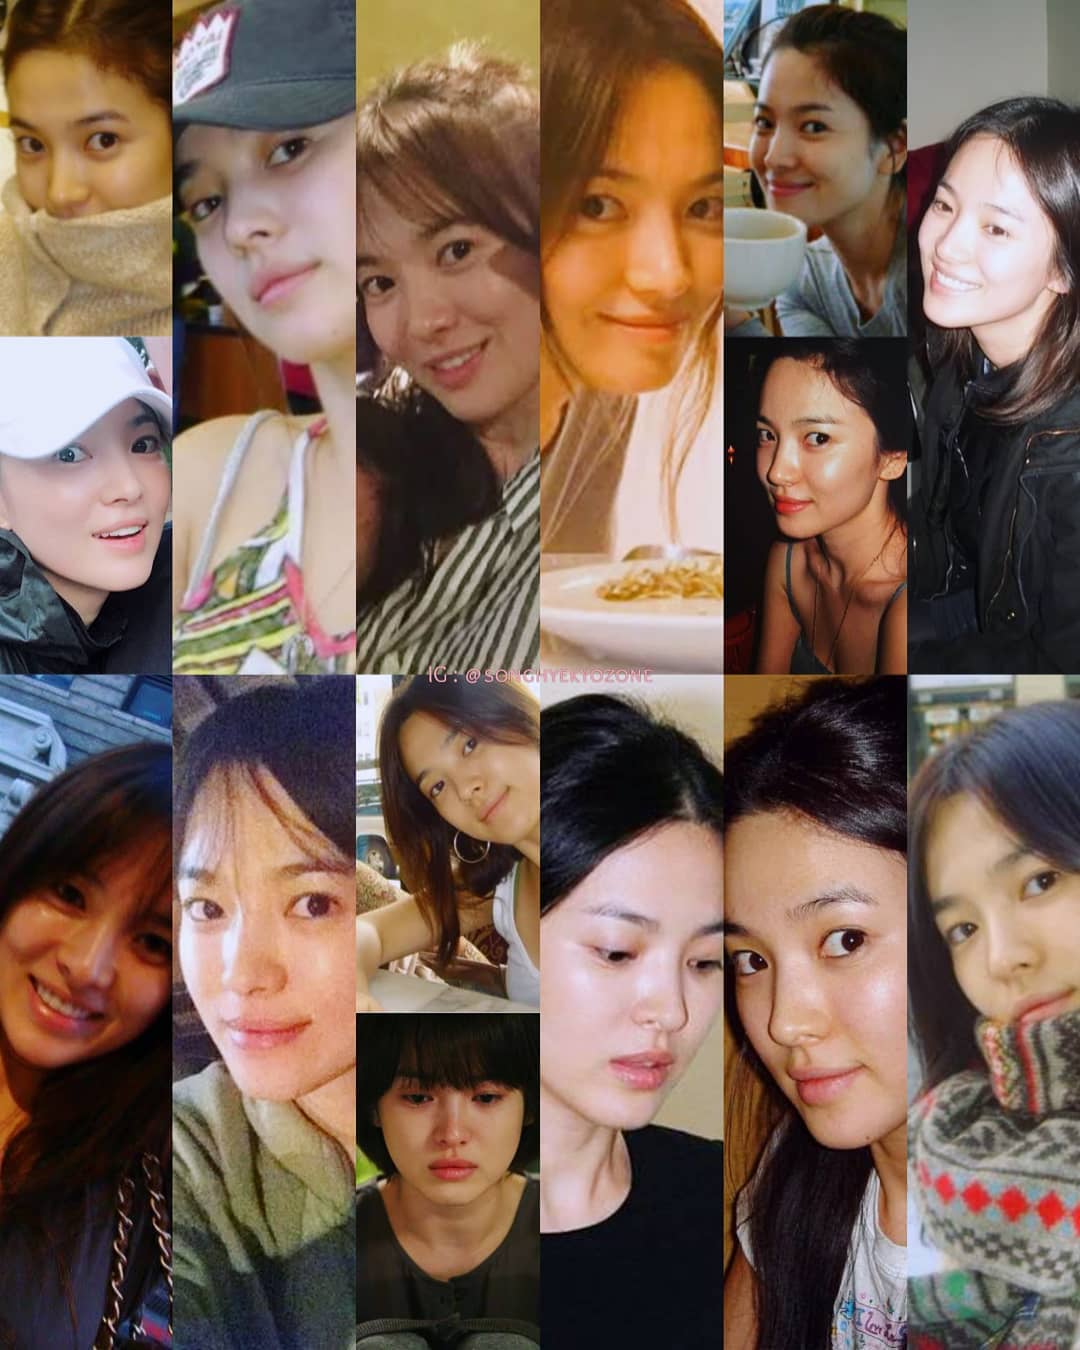 Nhìn tuyển tập ảnh mặt mộc ít son phấn của Song Hye Kyo, người ta sẽ biết nhan sắc của cô &quot;thần thánh&quot; đến độ nào - Ảnh 3.